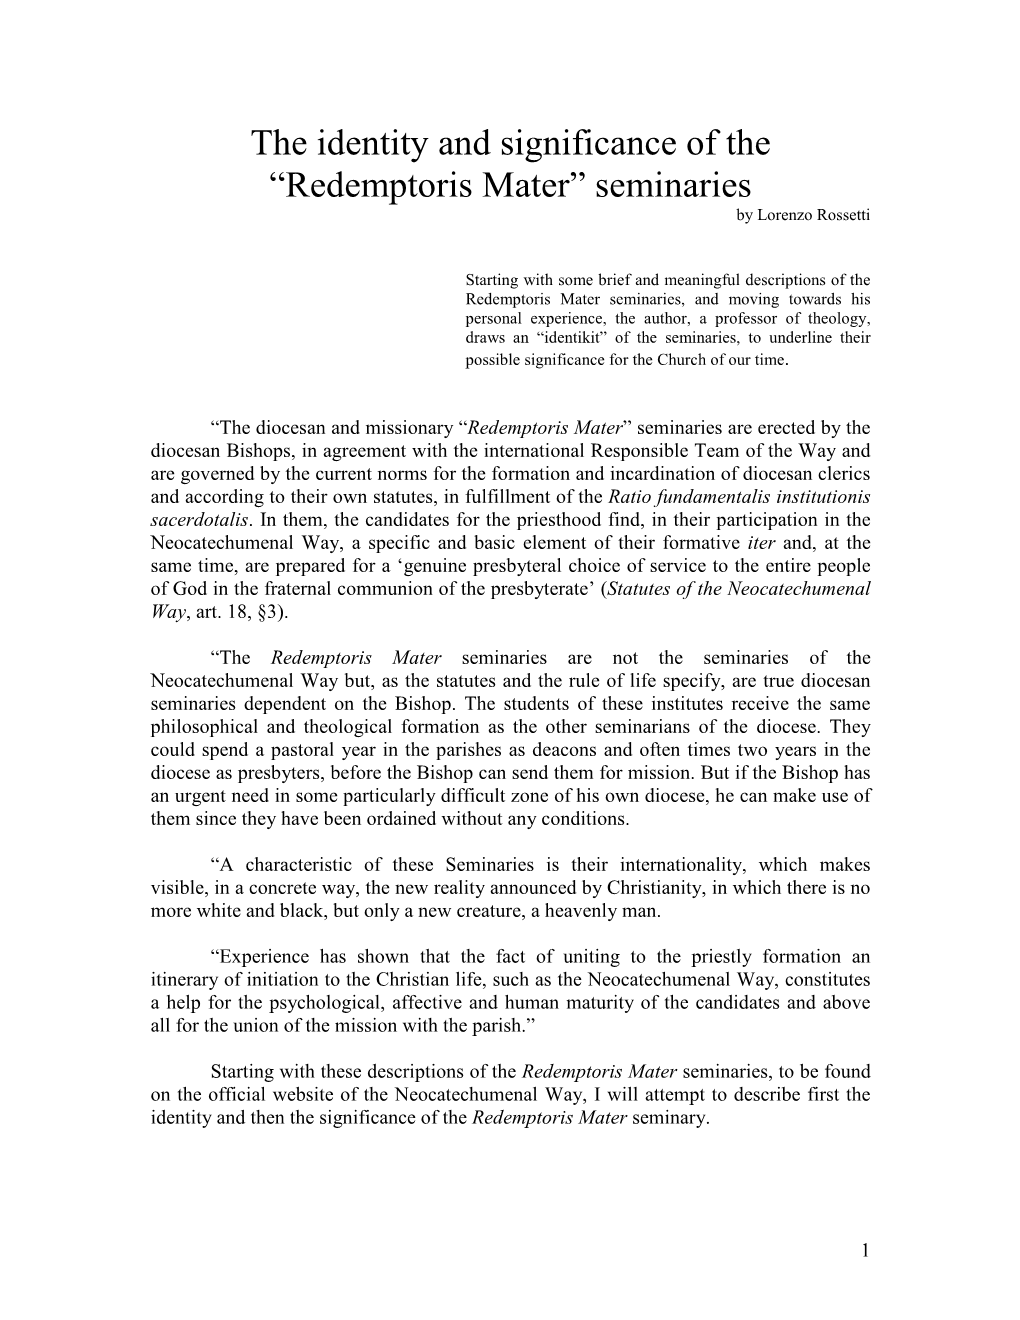 “Redemptoris Mater” Seminaries by Lorenzo Rossetti